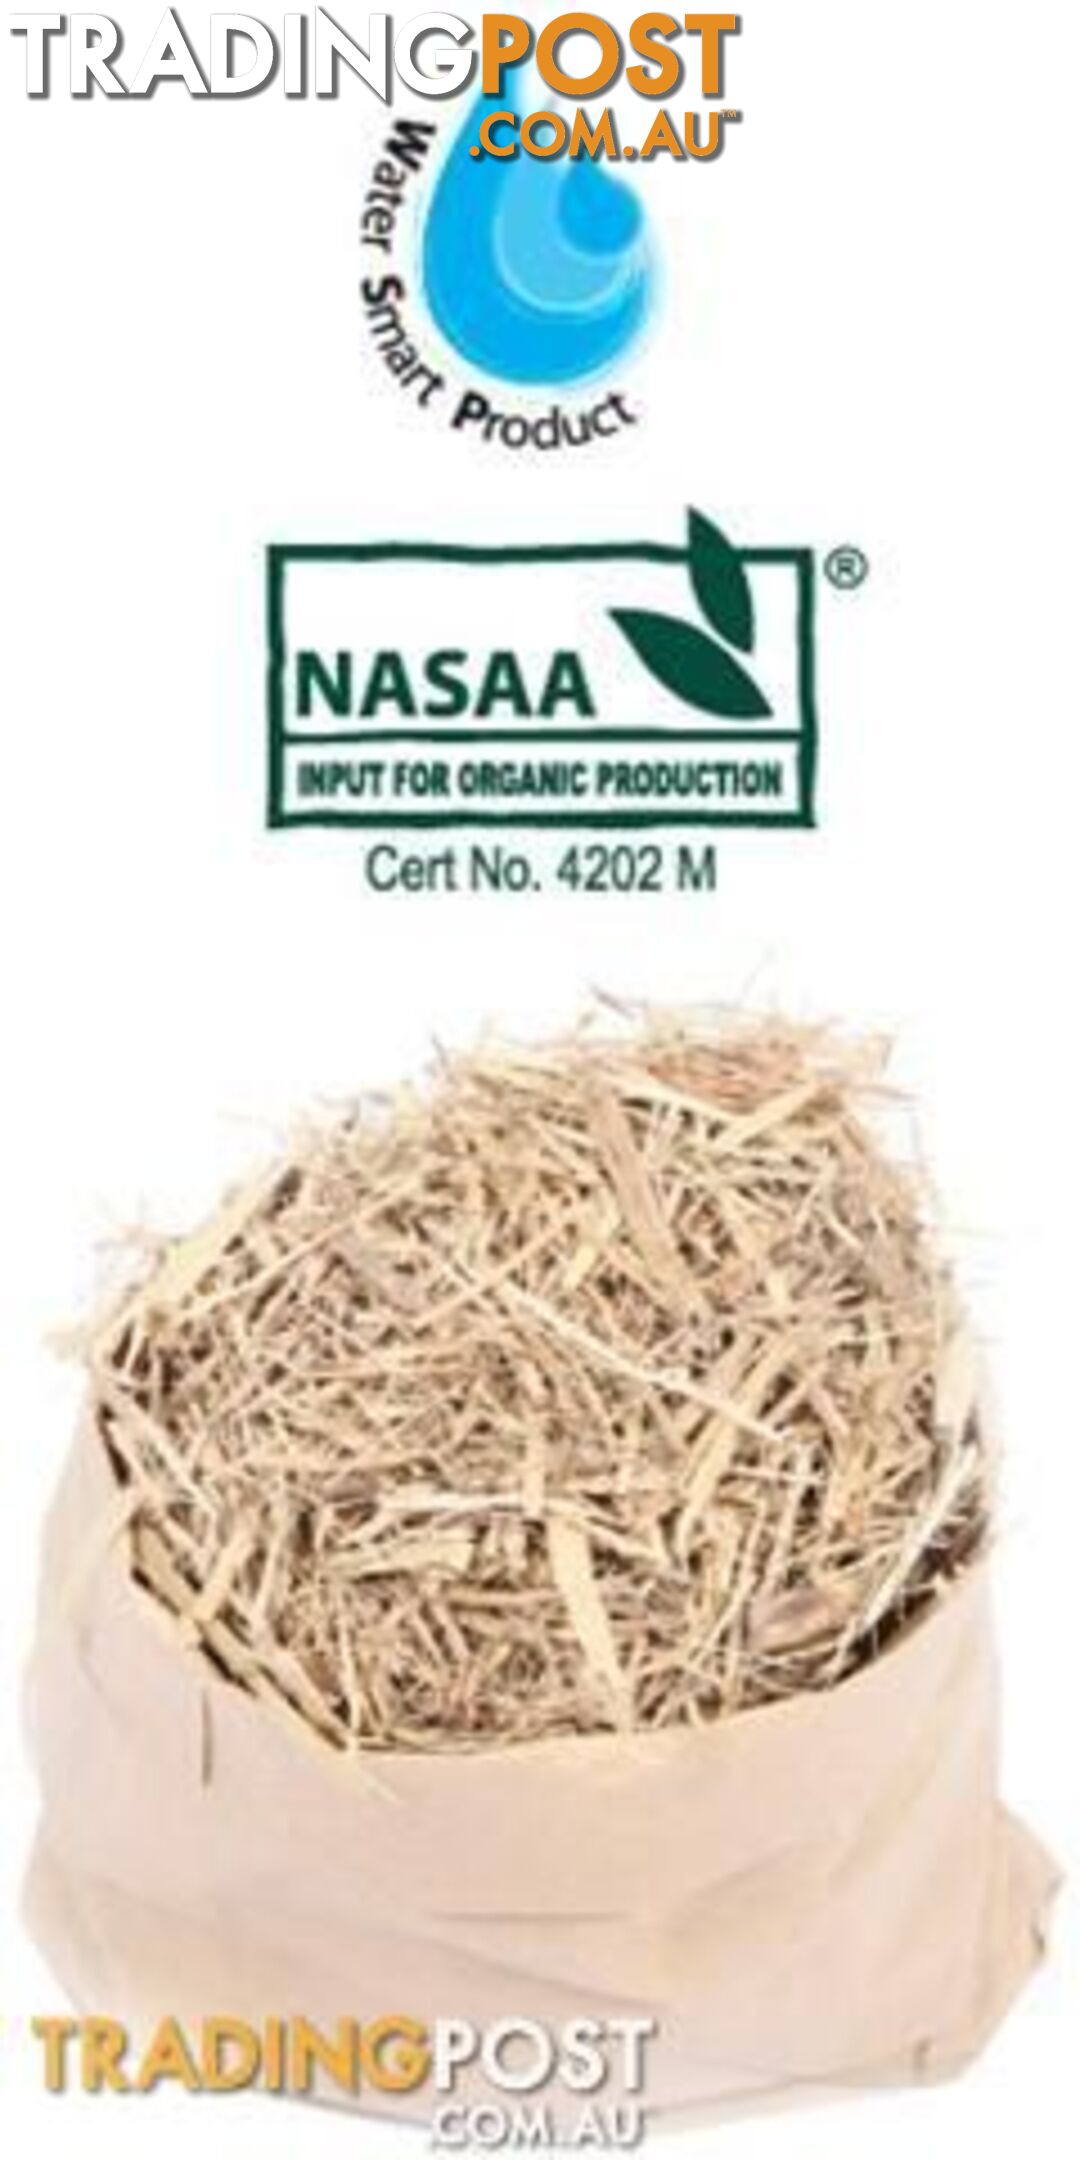 Organic Sugar Cane Mulch - StockCode: CKJGHY